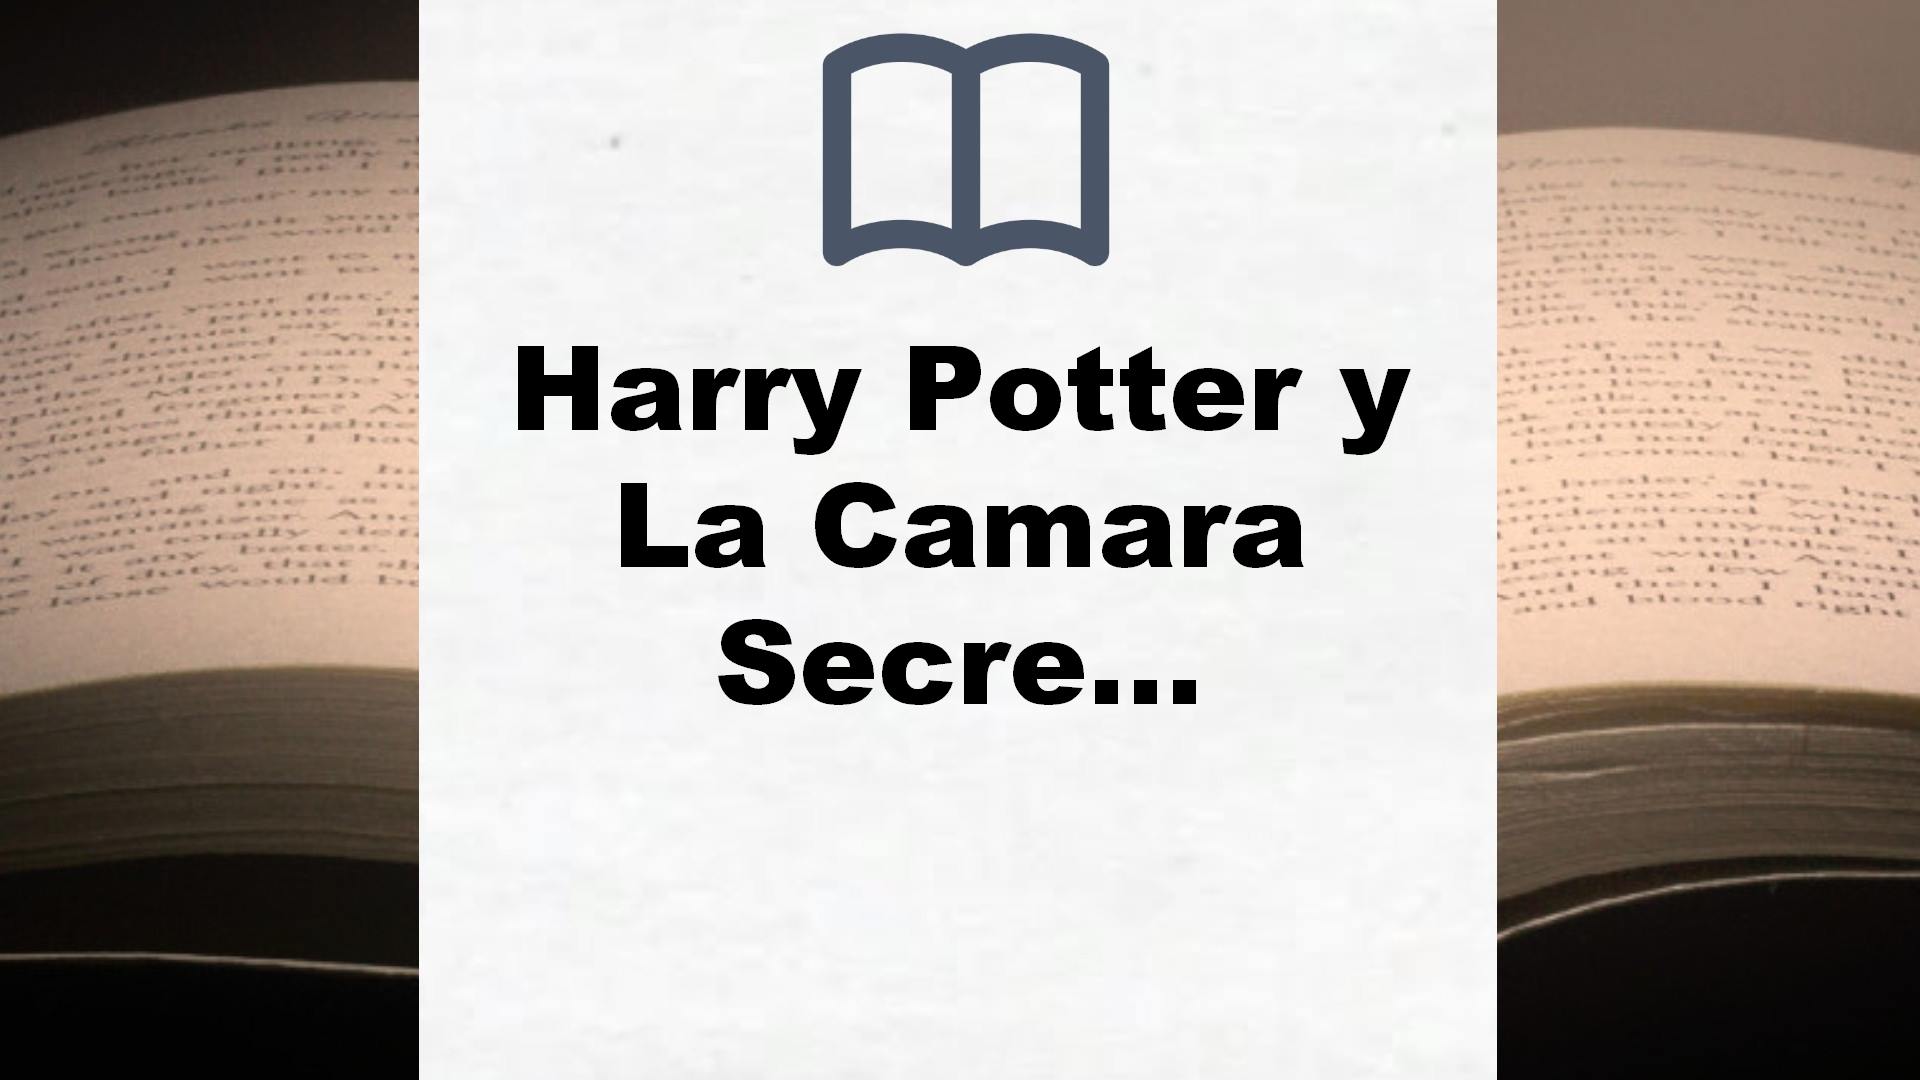 Harry Potter y La Camara Secreta – Reseña del libro